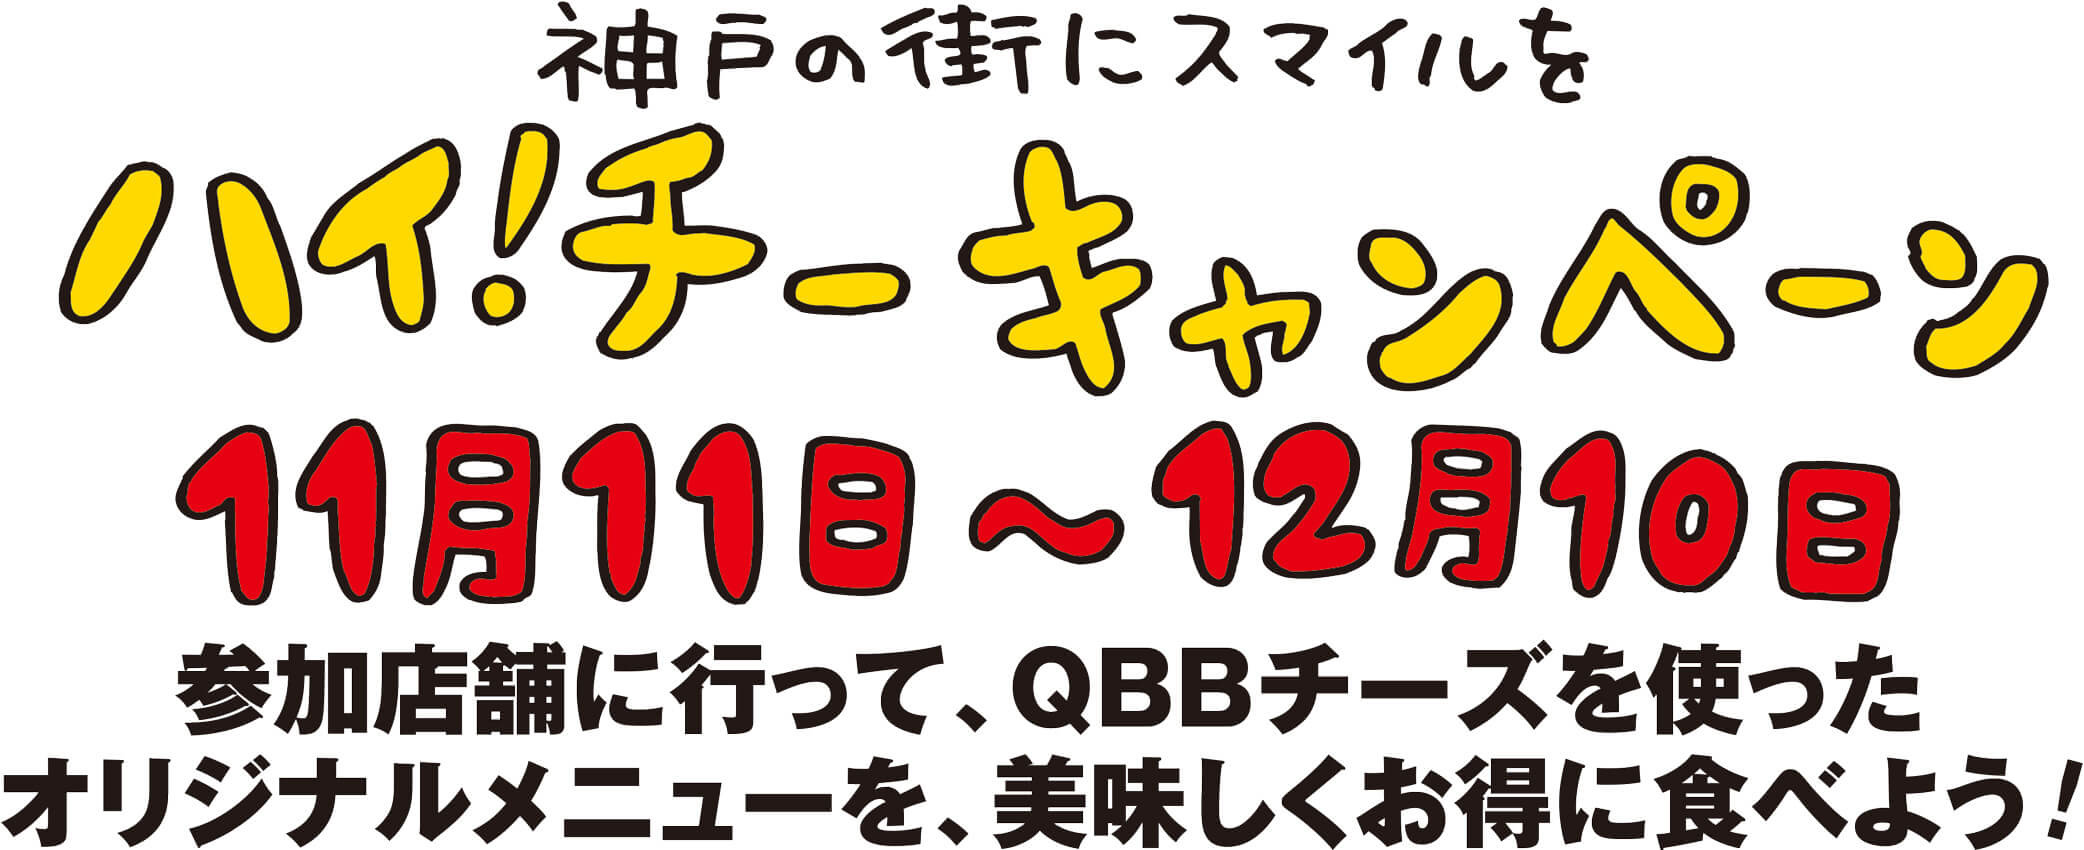 神戸の街にスマイルをハイ！チーキャンペーン 11月11日～12月10日 参加店舗に行って、QBBチーズを使ったオリジナルメニューを、美味しくお得に食べよう!